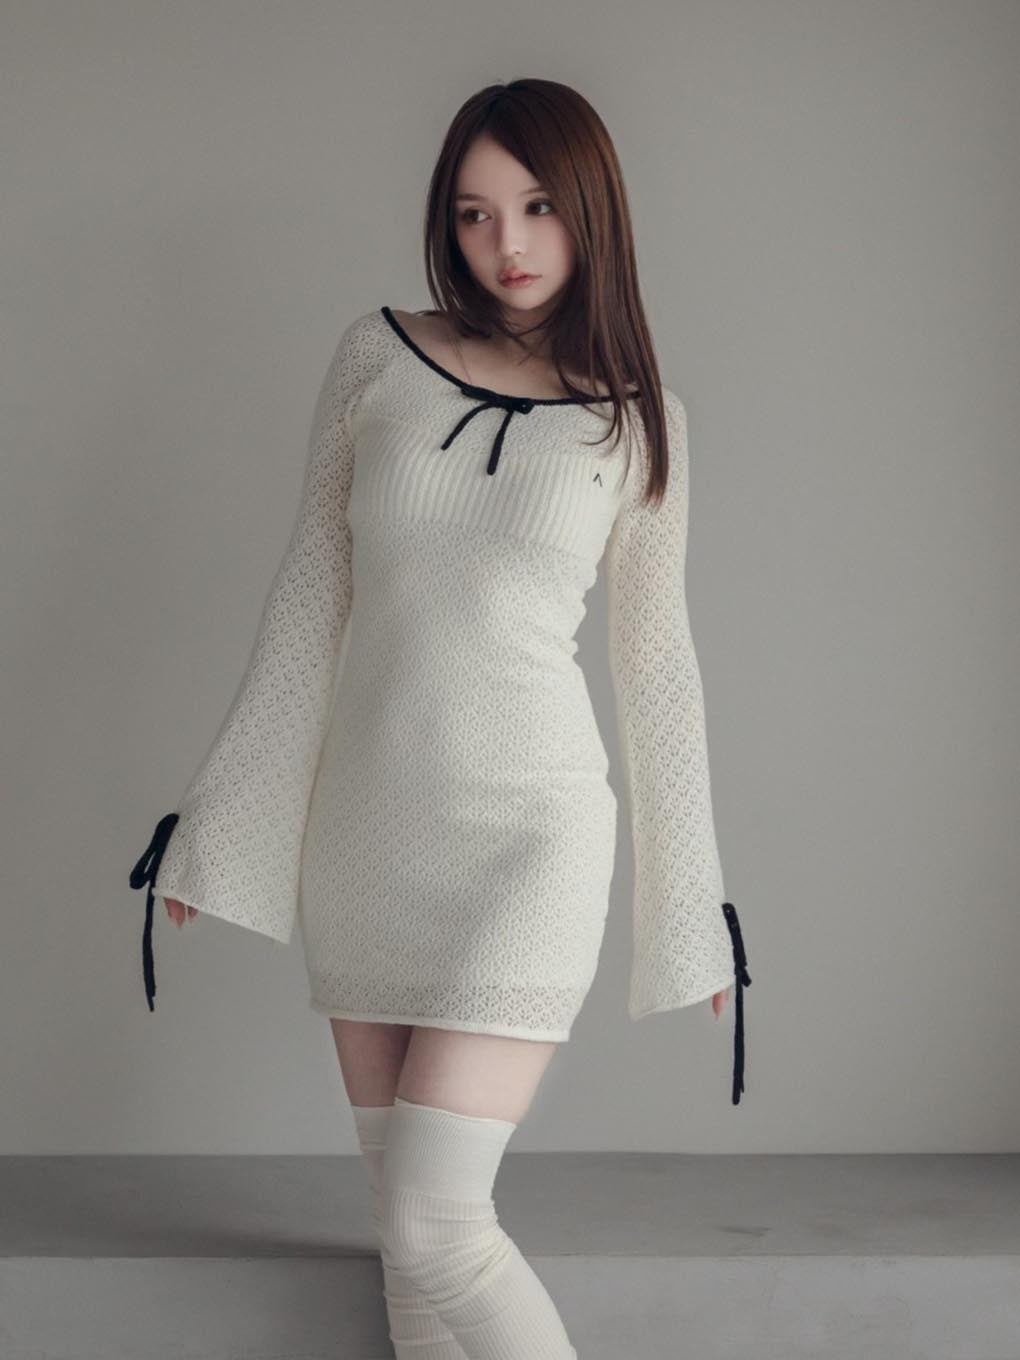 【新品未使用】andmary Lily crochet mini dress新品未使用